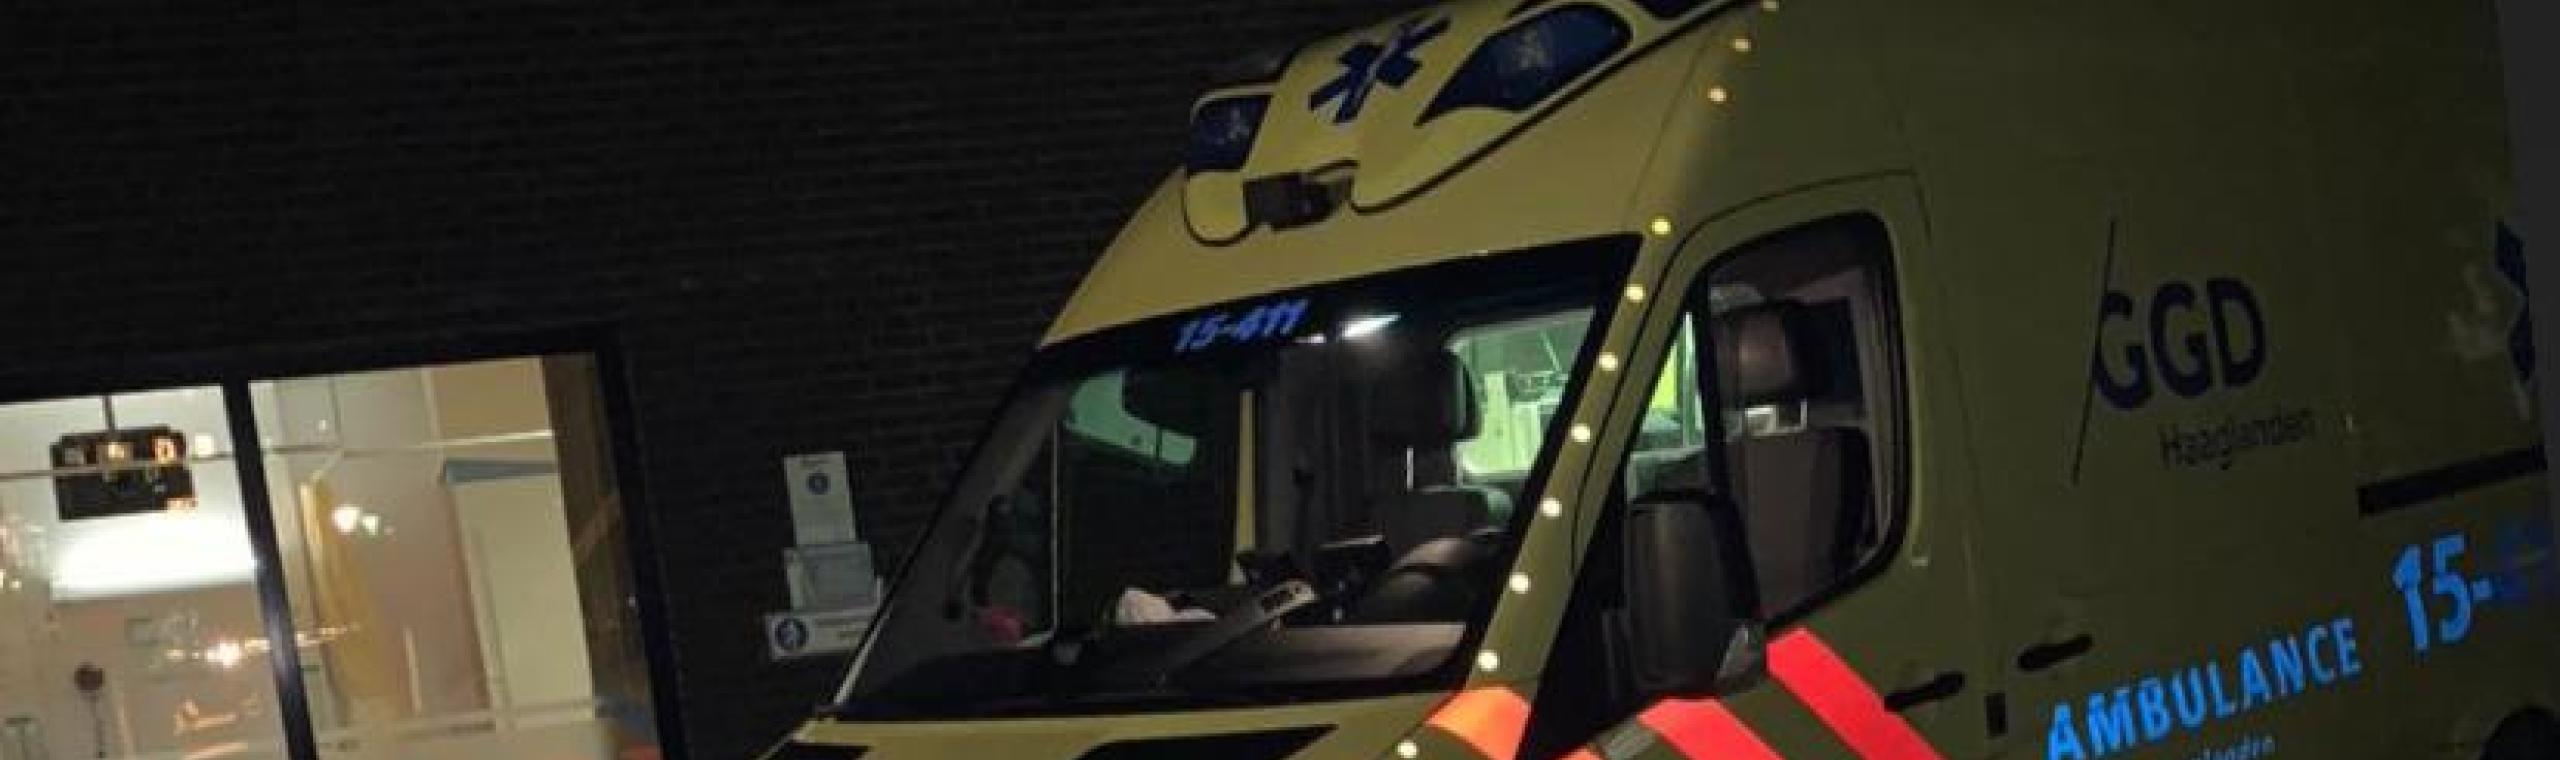 Ambulance in de nacht